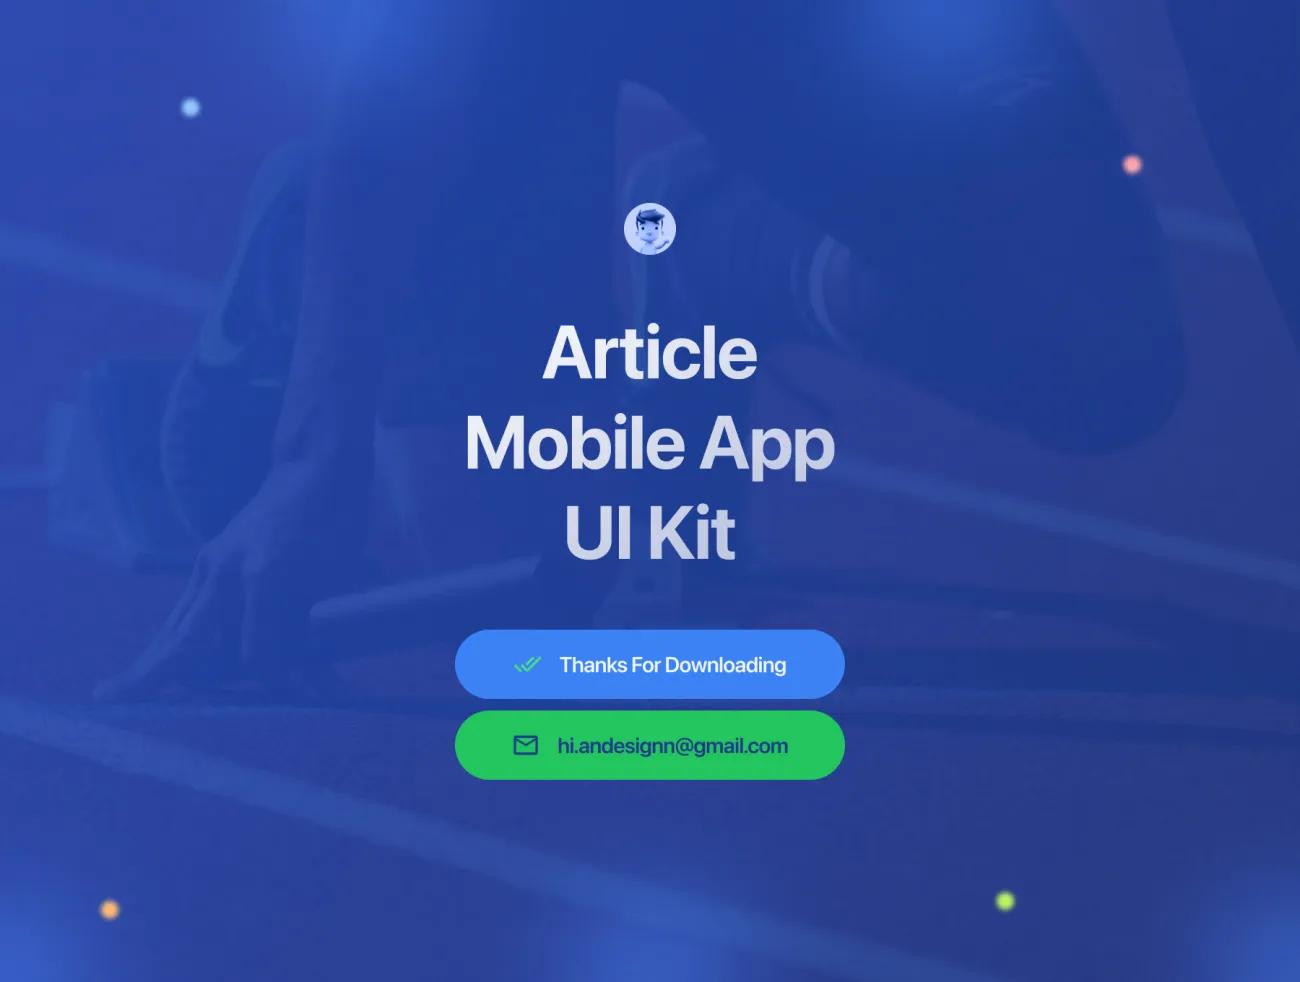 新闻博客文章阅读发布手机应用App UI套件 Informa - Article Mobile App UI Kit figma格式-UI/UX、ui套件、博客-到位啦UI